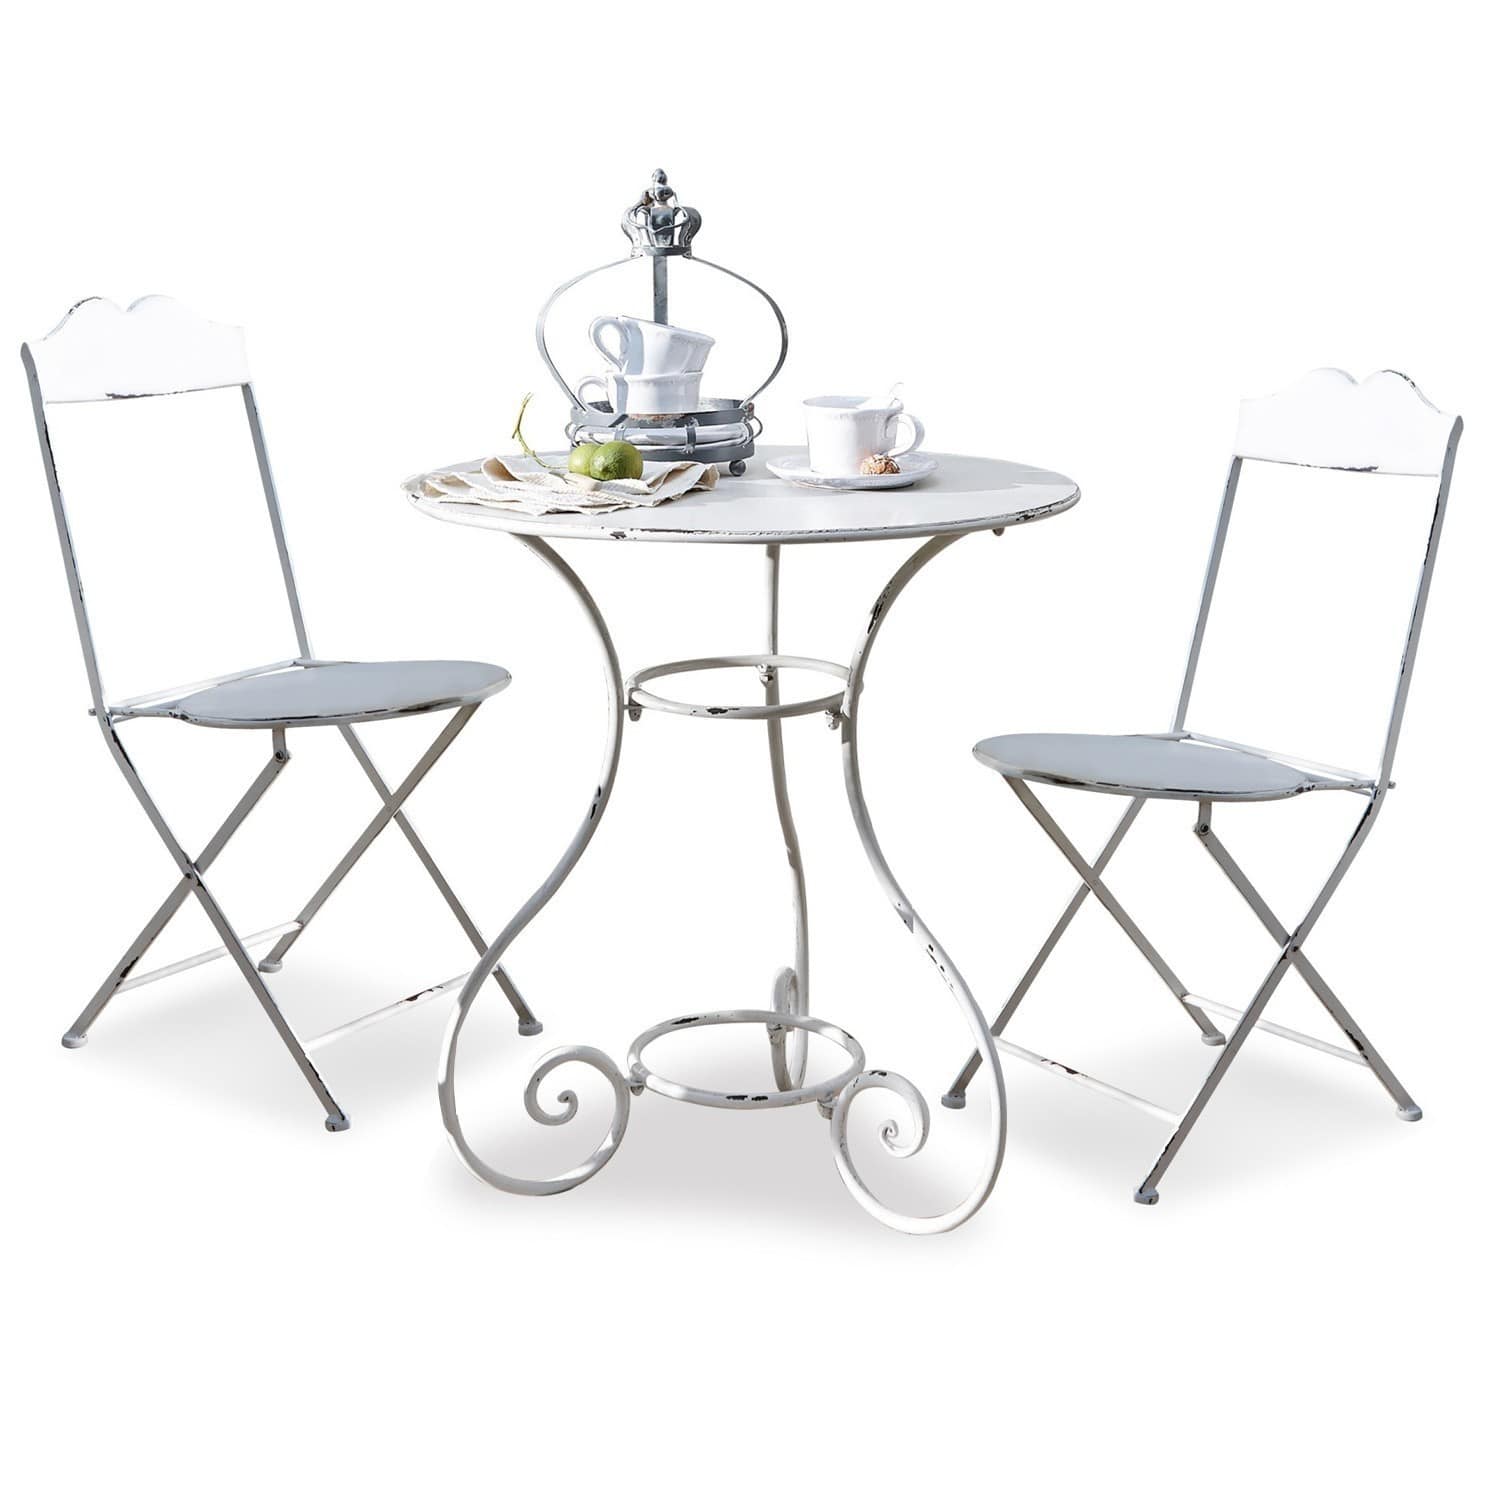 loberon ensemble table et chaises iteuil, blanc vieilli (69.5 x 69.5 x 91.5cm)